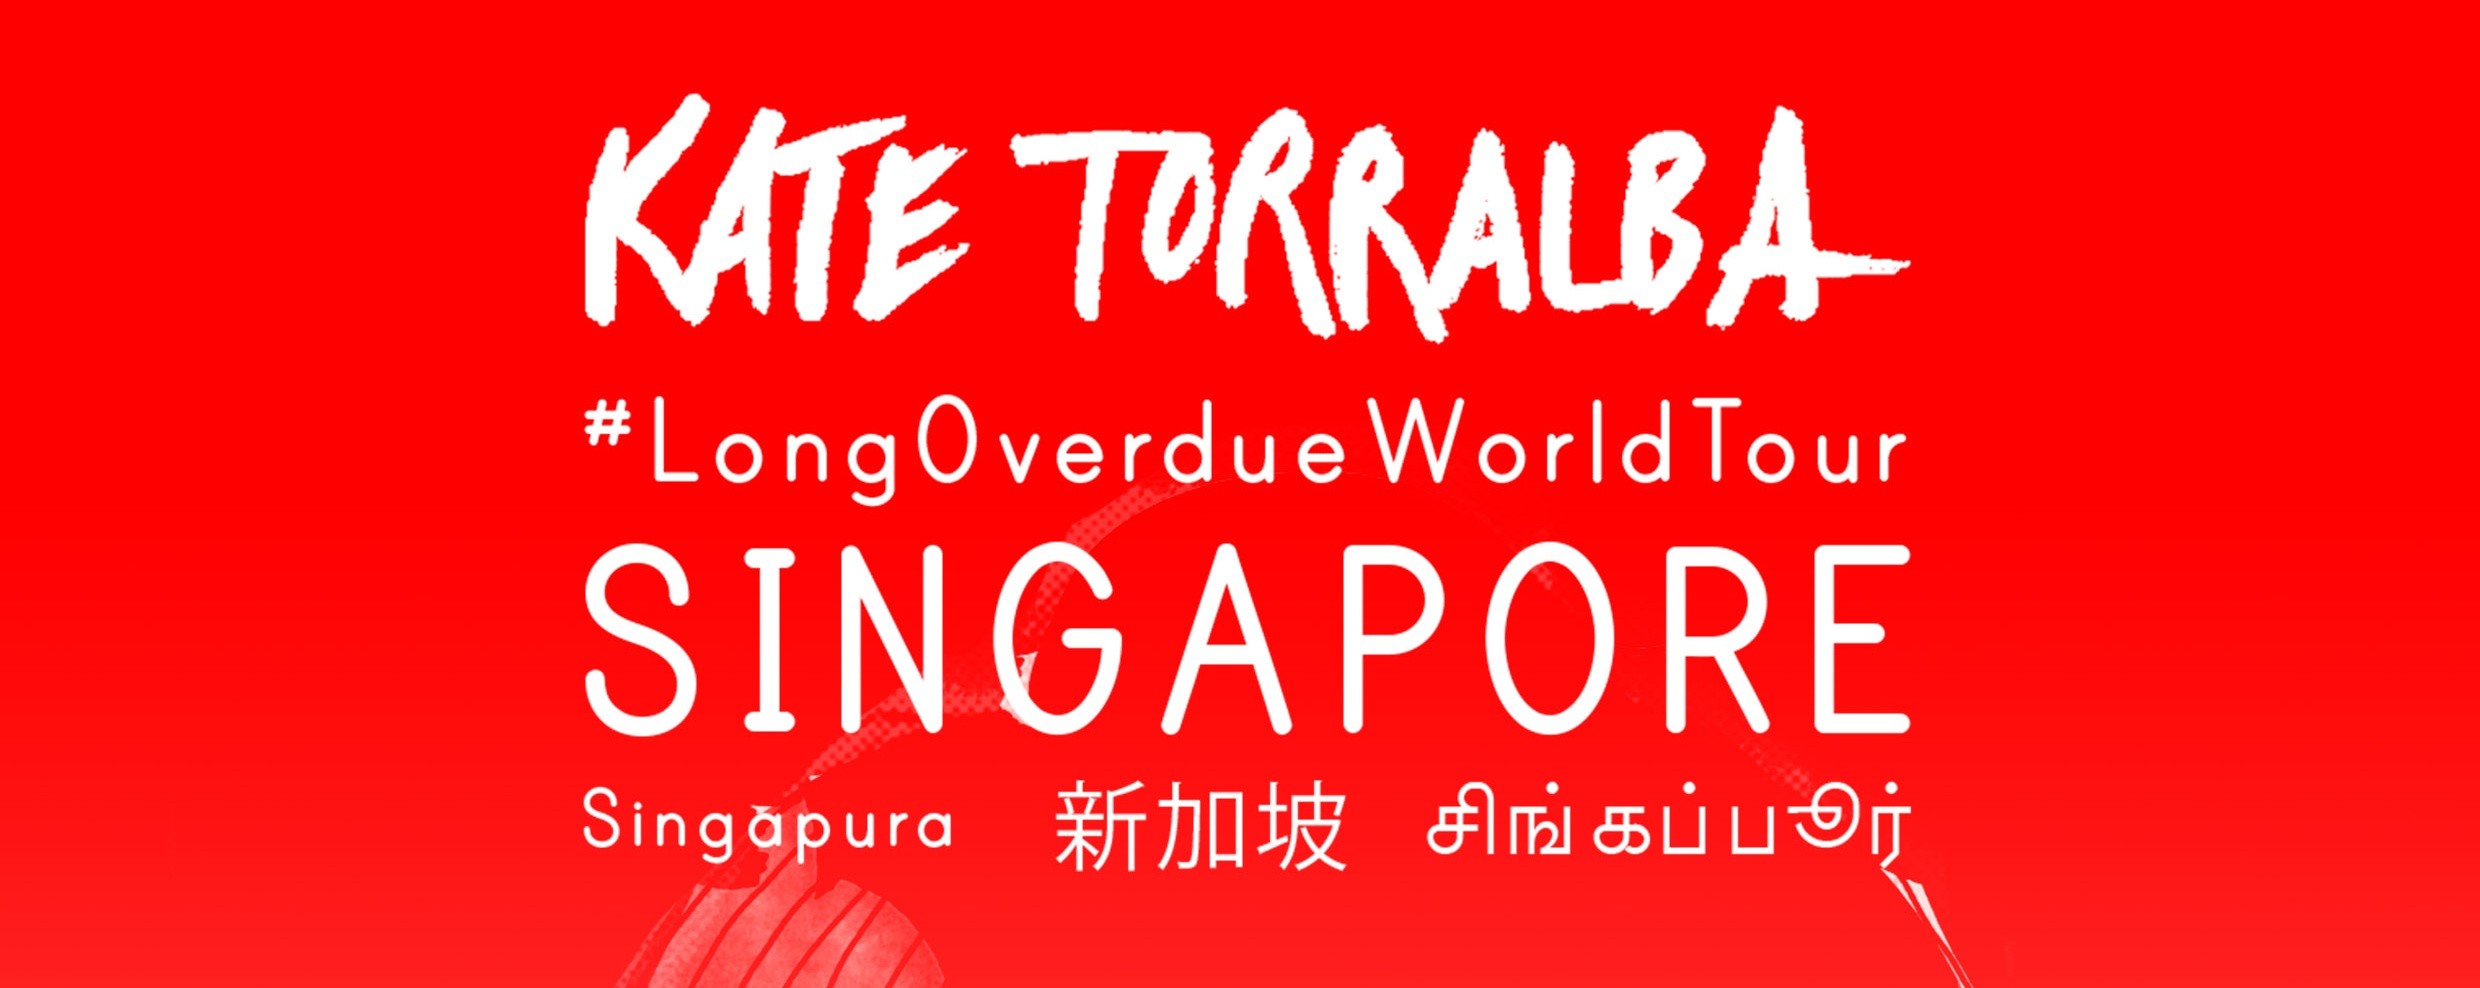 KATE TORRALBA "Long Overdue World Tour"